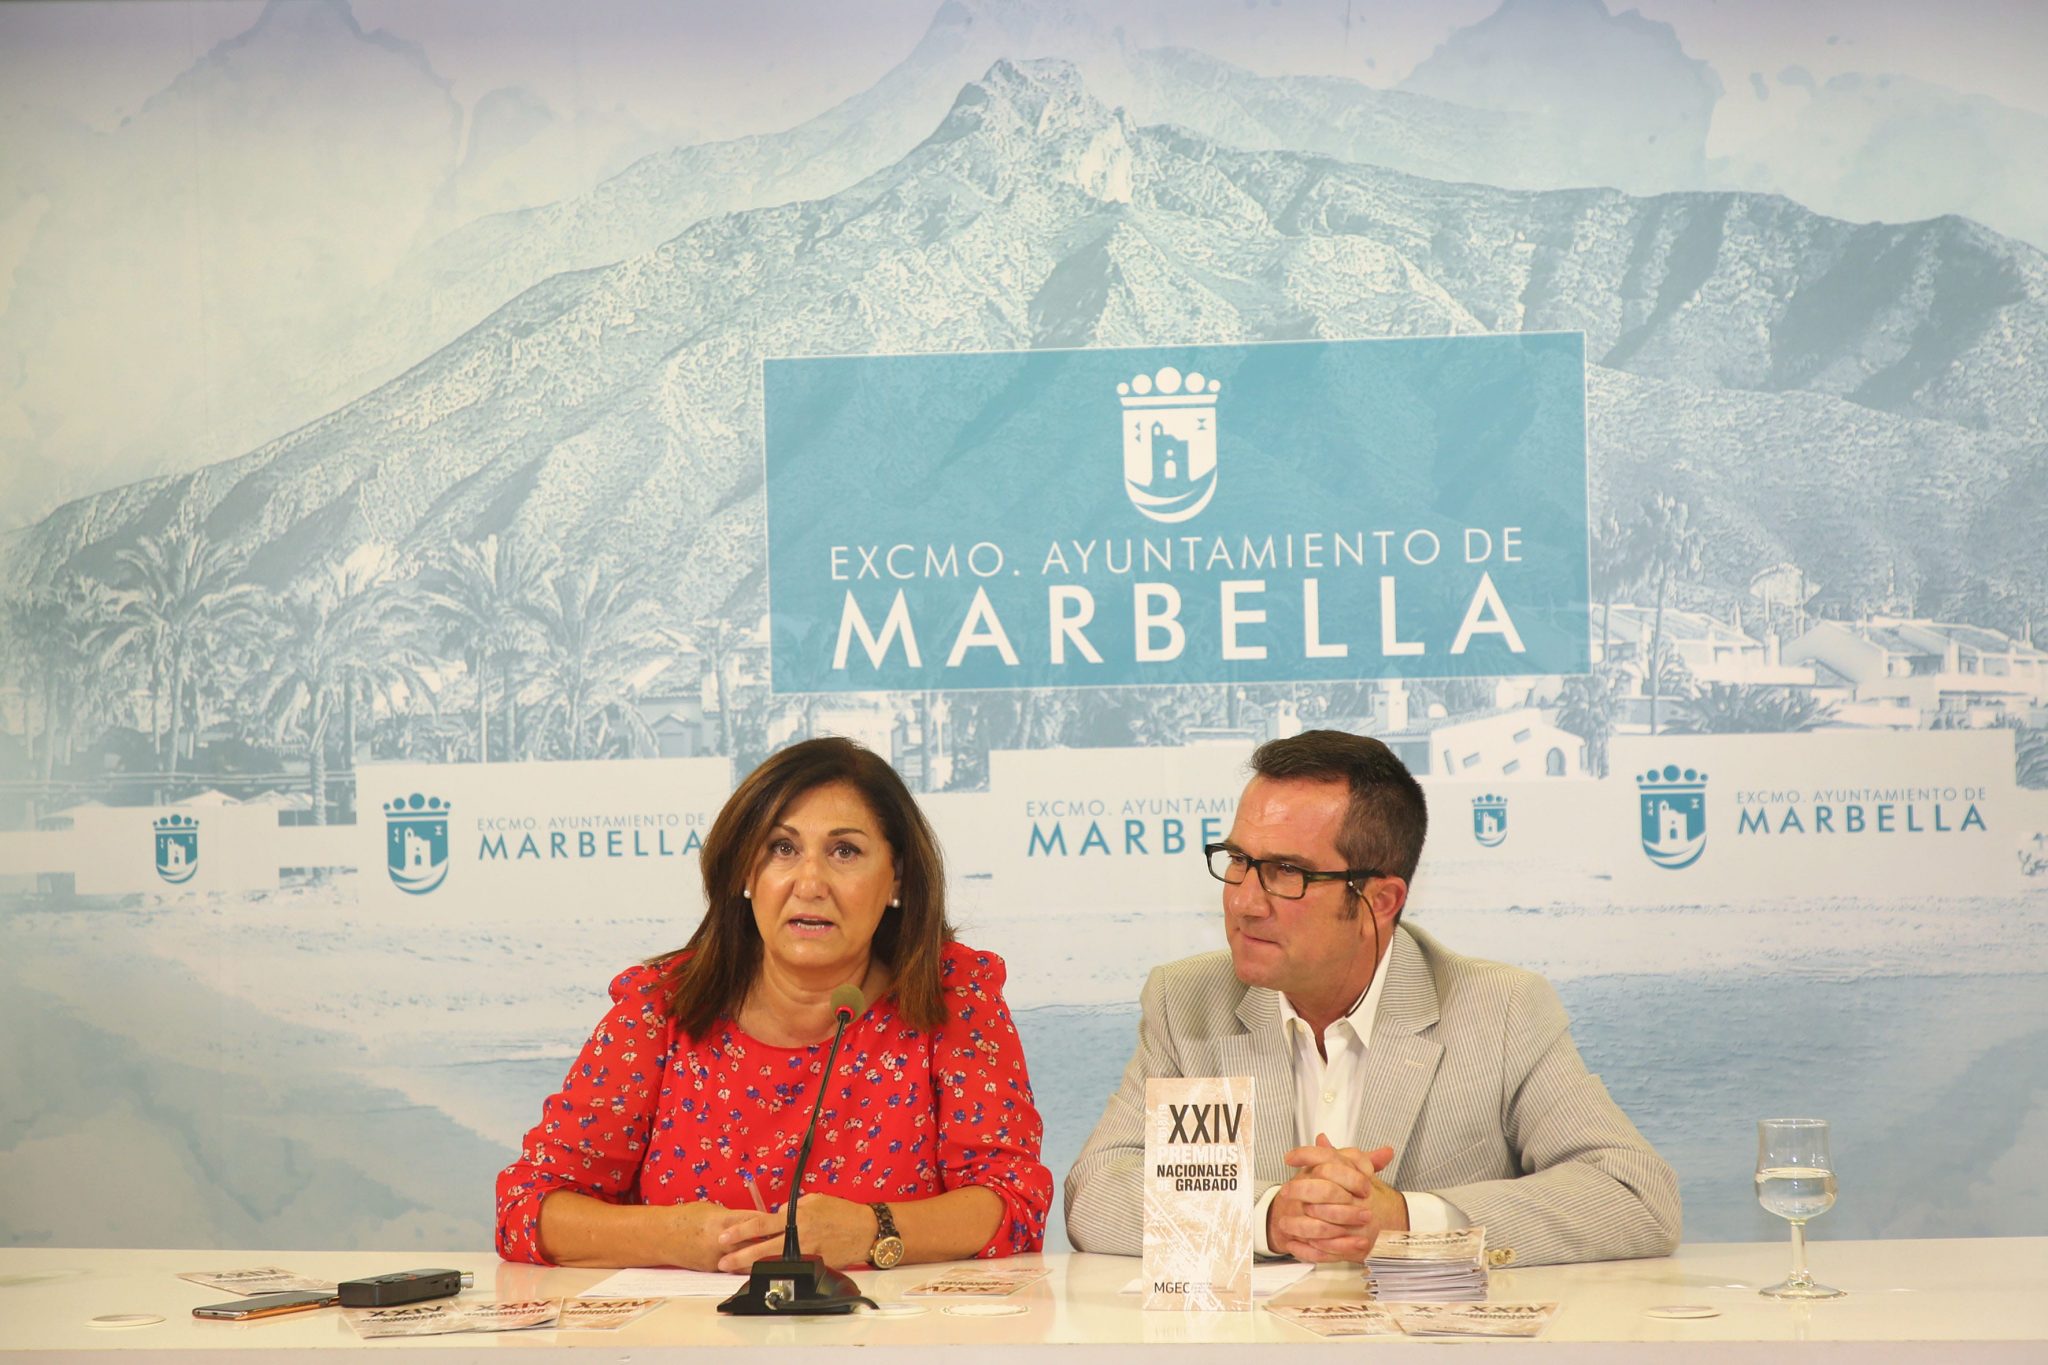 Marbella convoca la XXIV edición de los Premios Nacionales de Grabado